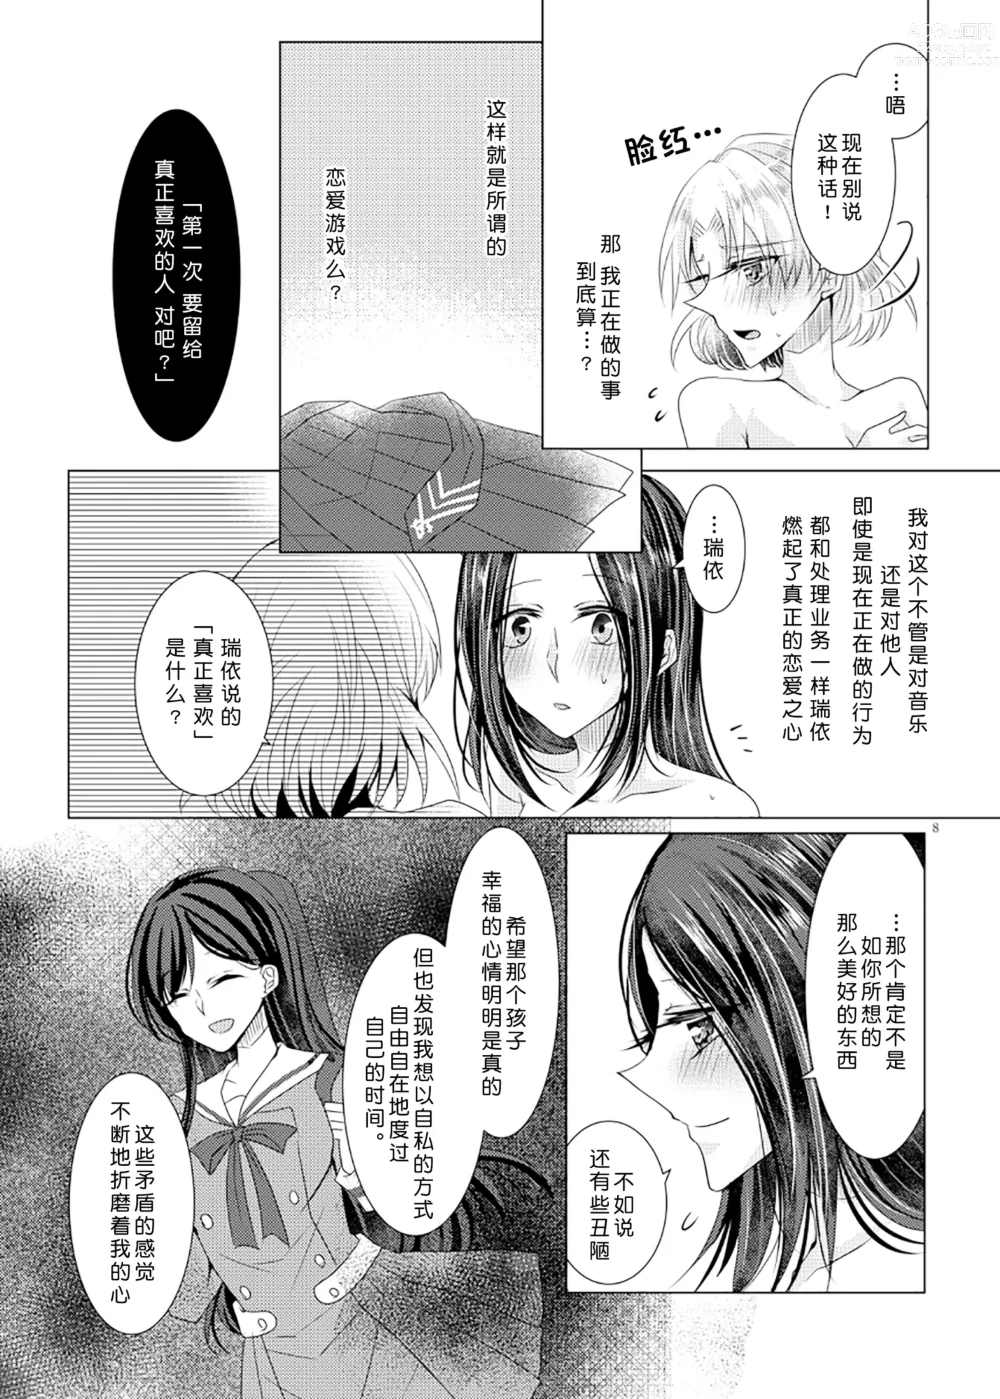 Page 7 of doujinshi 倒错罗曼司